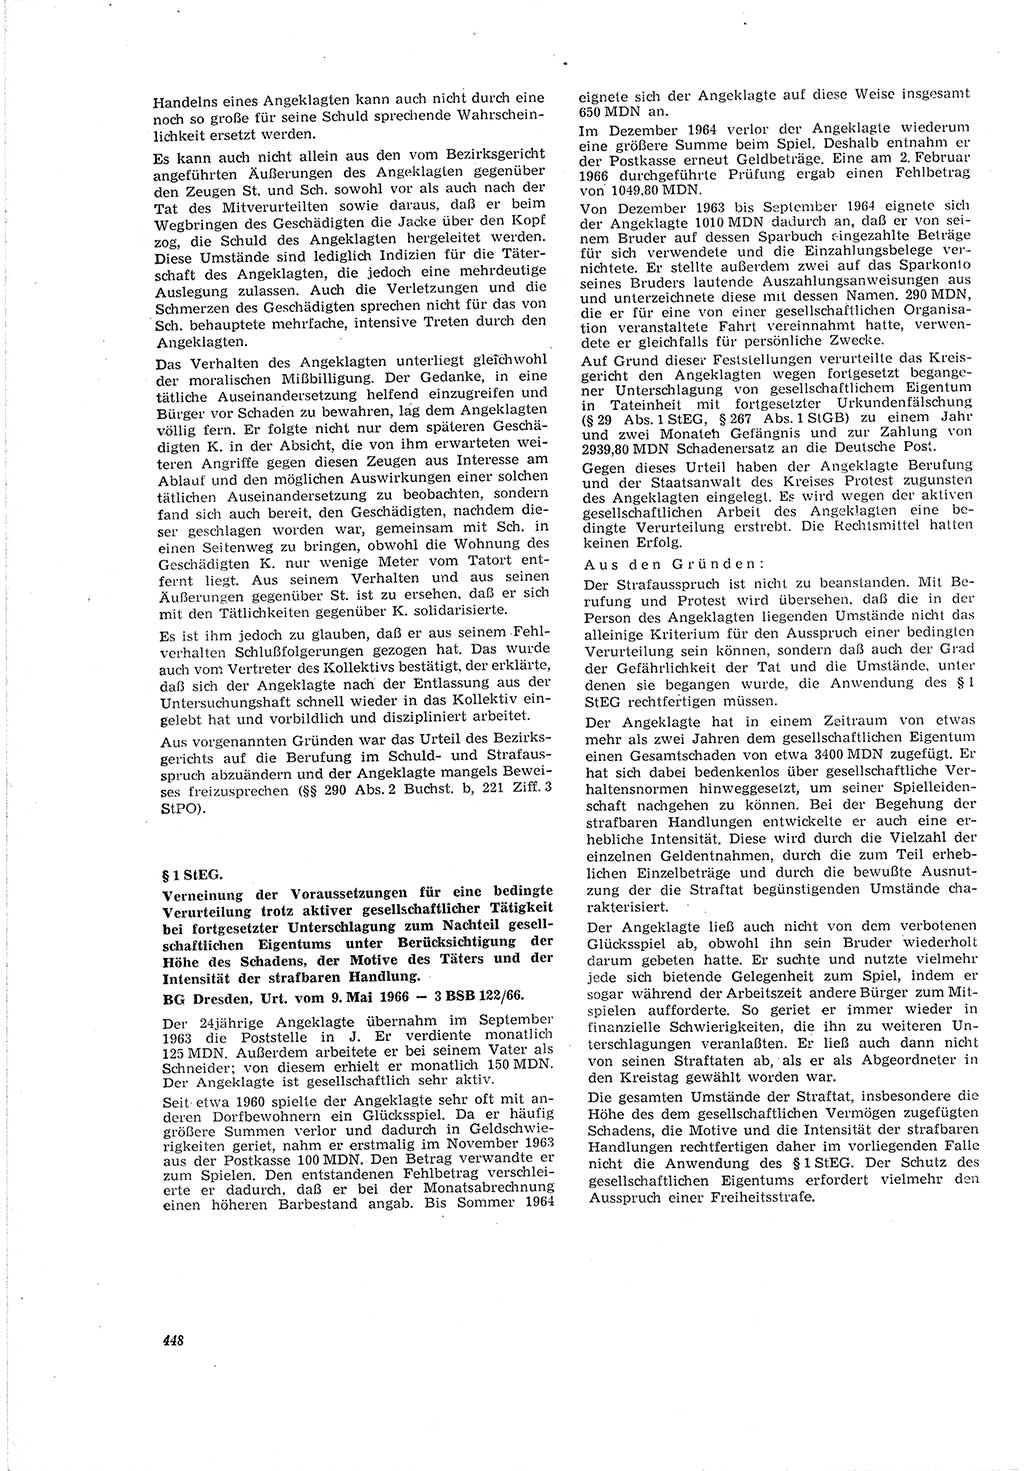 Neue Justiz (NJ), Zeitschrift für Recht und Rechtswissenschaft [Deutsche Demokratische Republik (DDR)], 20. Jahrgang 1966, Seite 448 (NJ DDR 1966, S. 448)